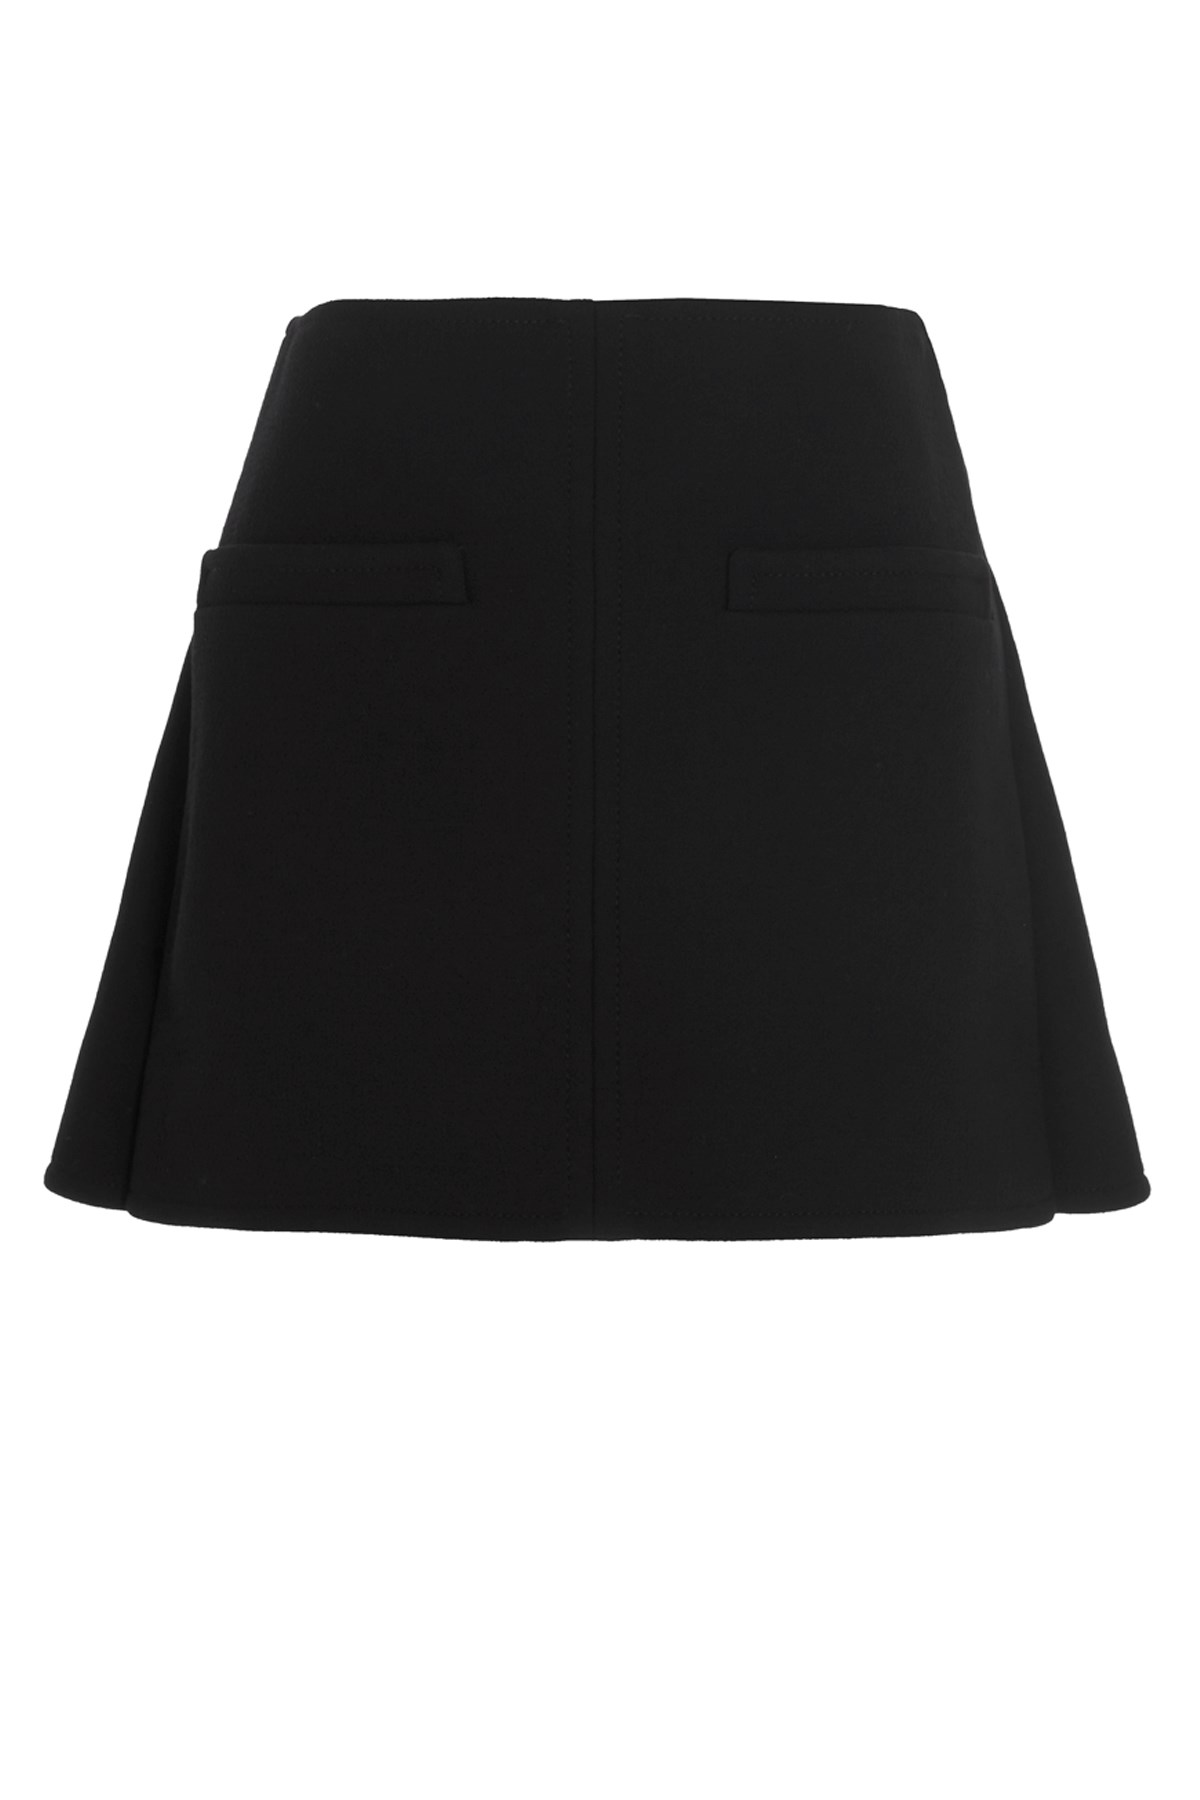 COURREGES 'Dbl’ Miniskirt